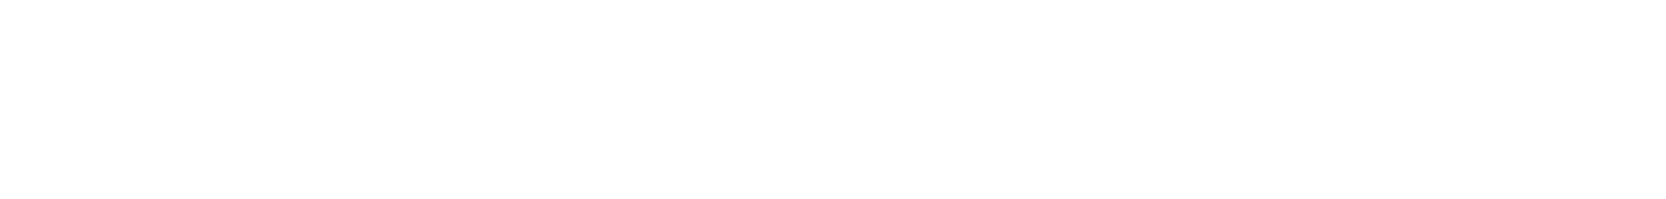 inTEST Corporation logo large for dark backgrounds (transparent PNG)